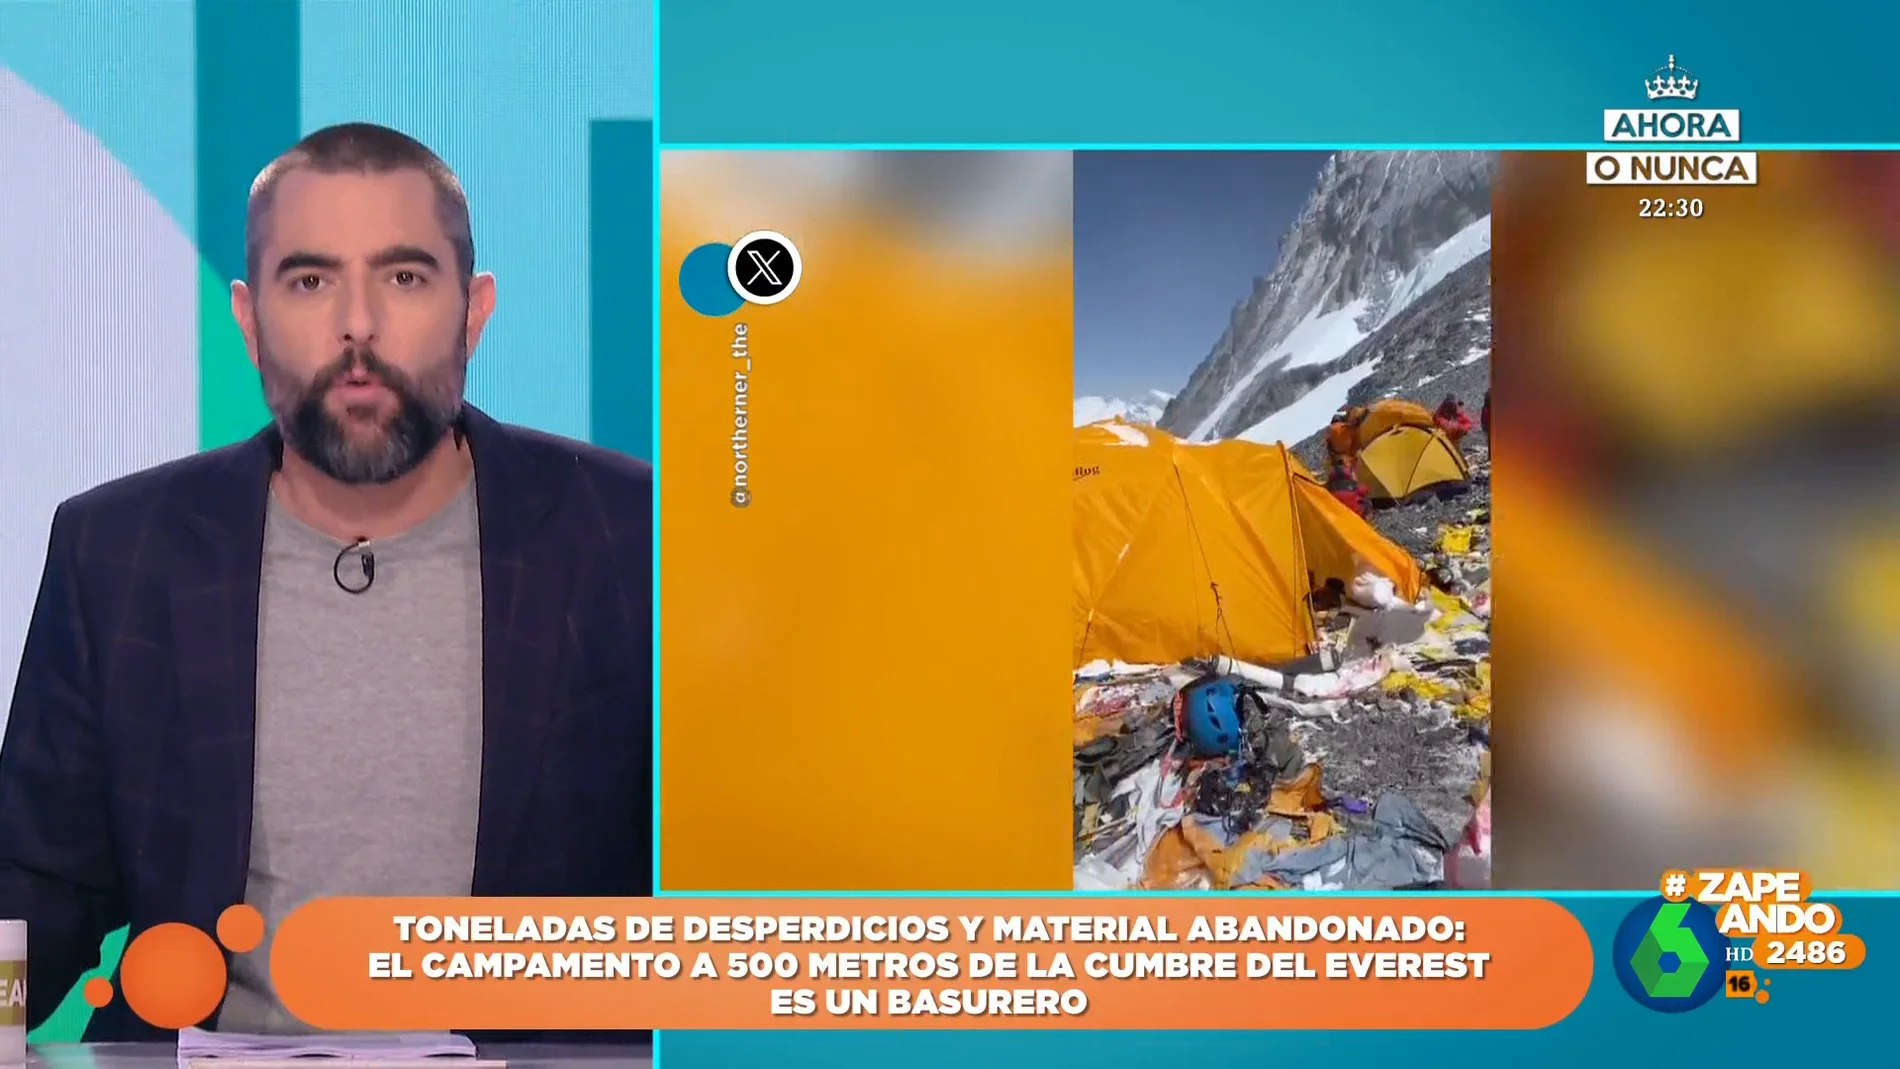 "No sabía que se celebraba allí el Viñarock": así está el campamento más cercano a la cumbre del Everest